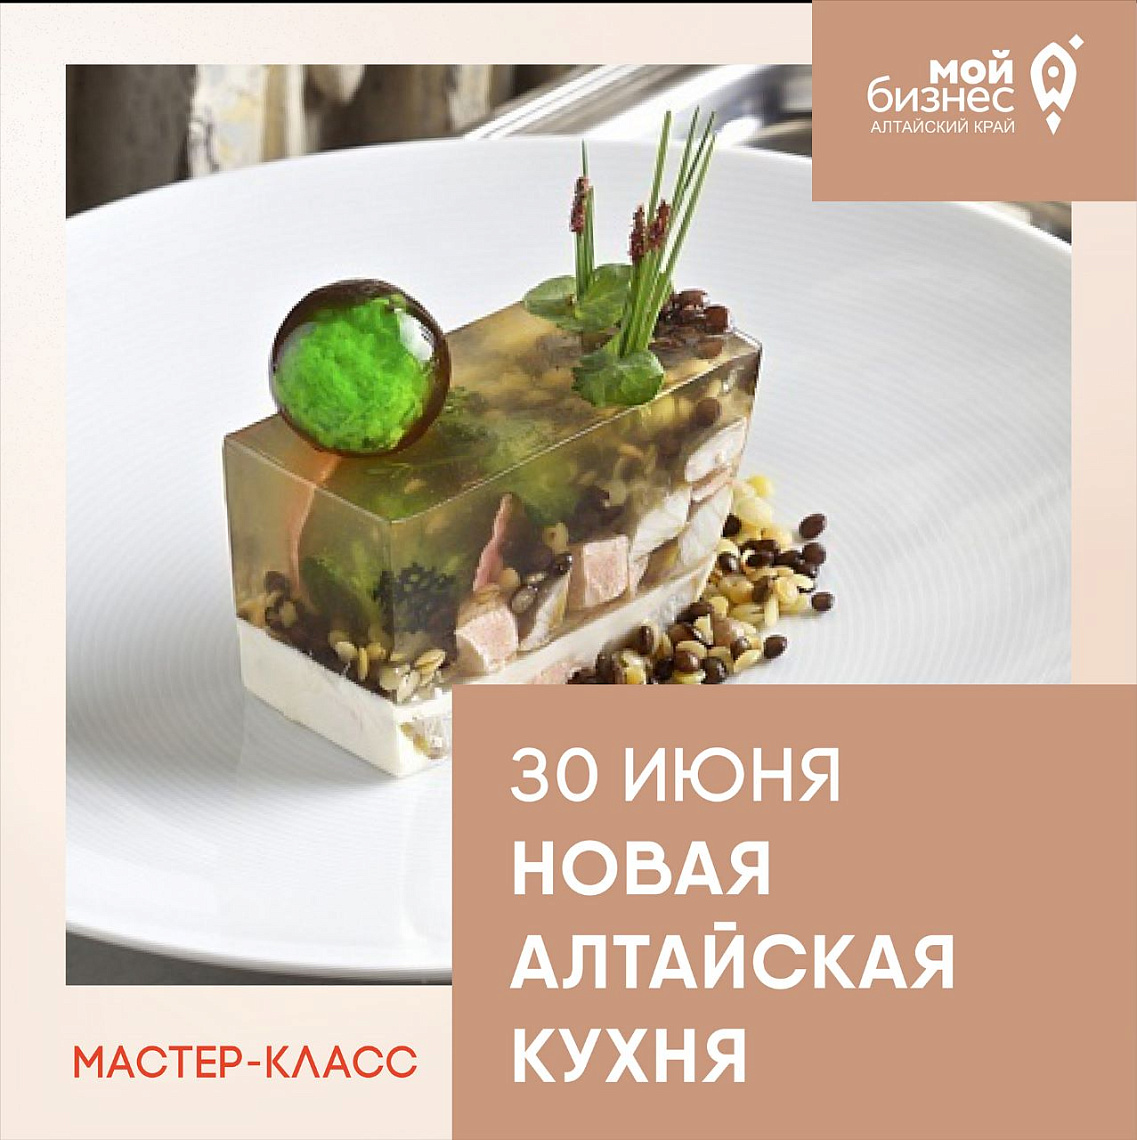 Приглашаем предпринимателей гастротуризма на мастер-класс по созданию новой Алтайской кухни